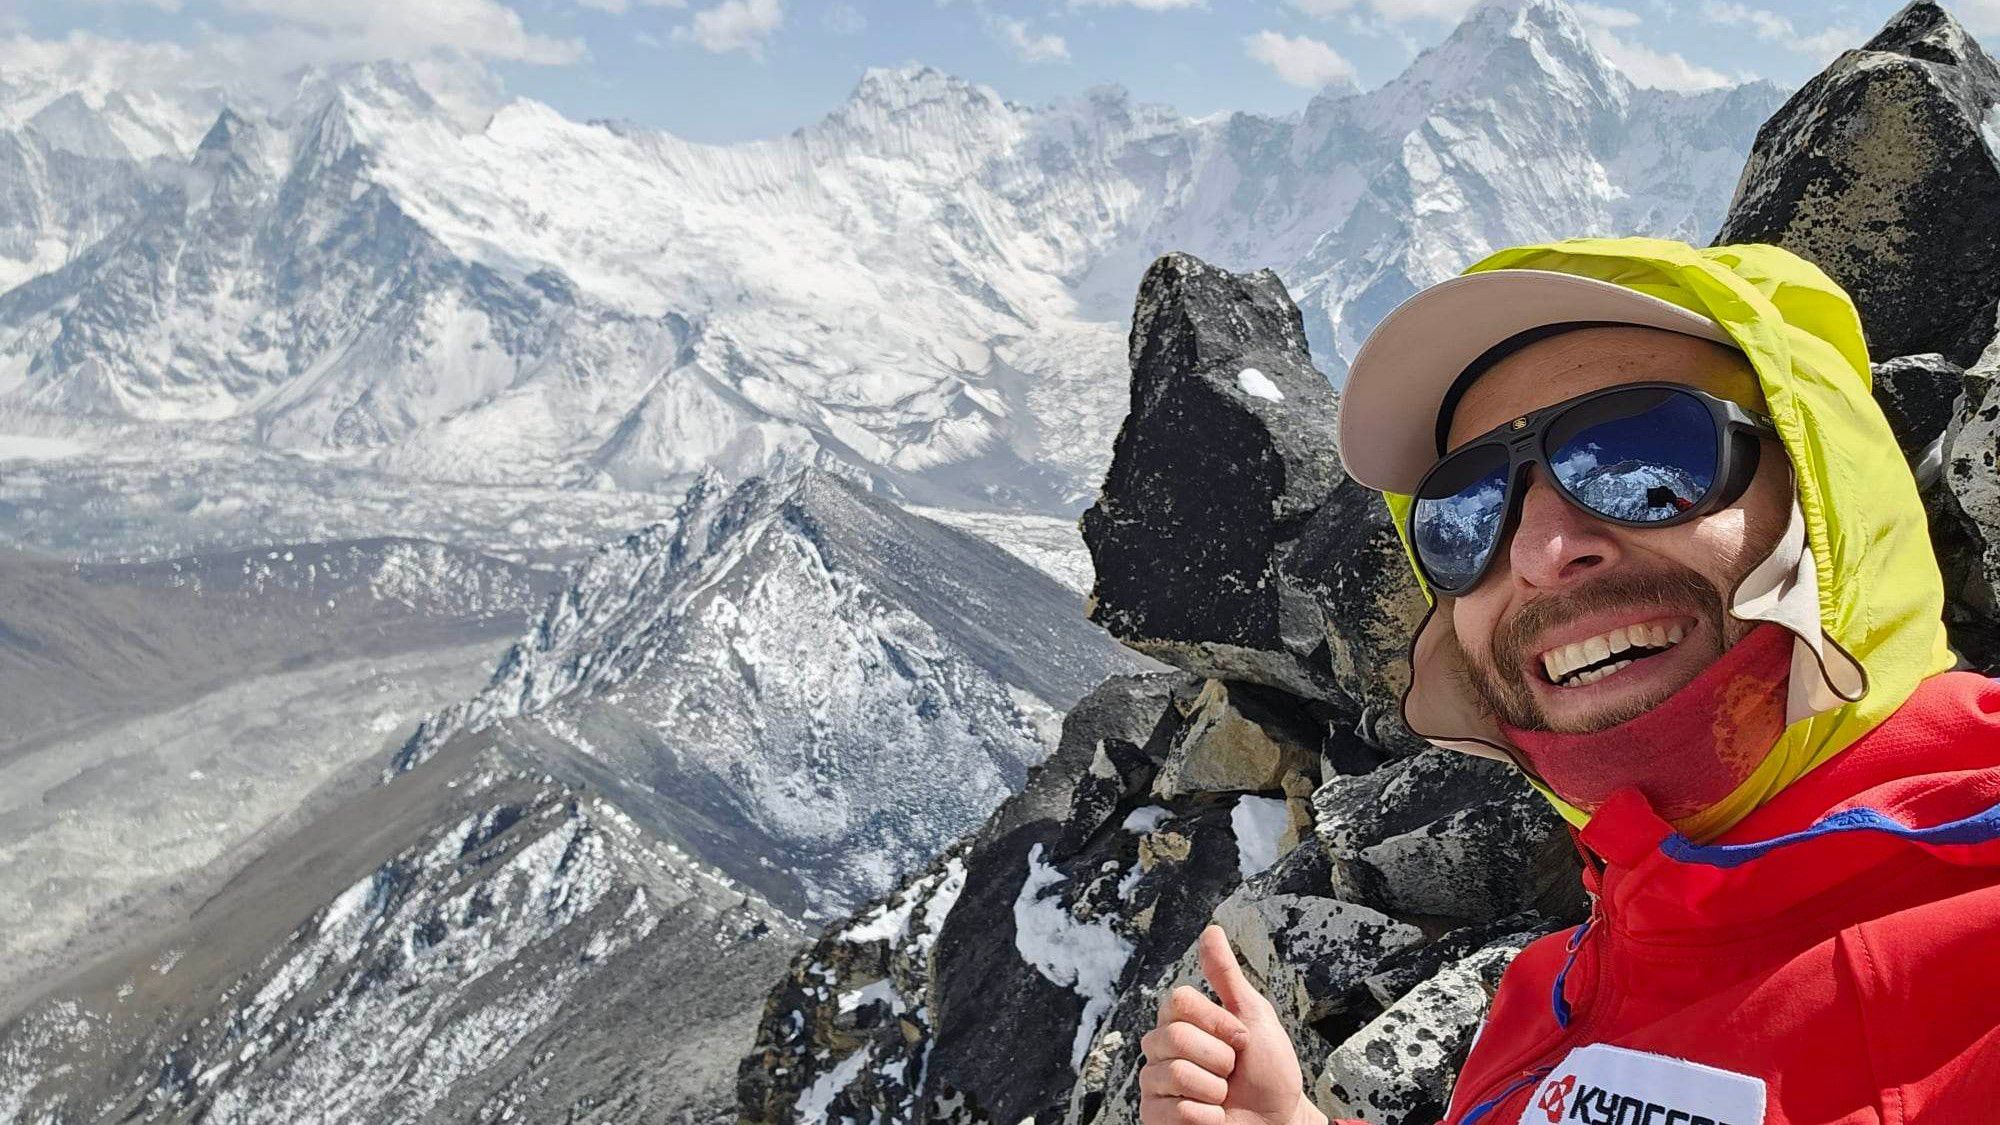 Mint minden hegymászó, Suhajda Szilárd is otthonosan mozgott a gleccserek, kuloárok, kiszögellések, nyergek világában. (Fotó: Suhajda Szilárd/Facebook)